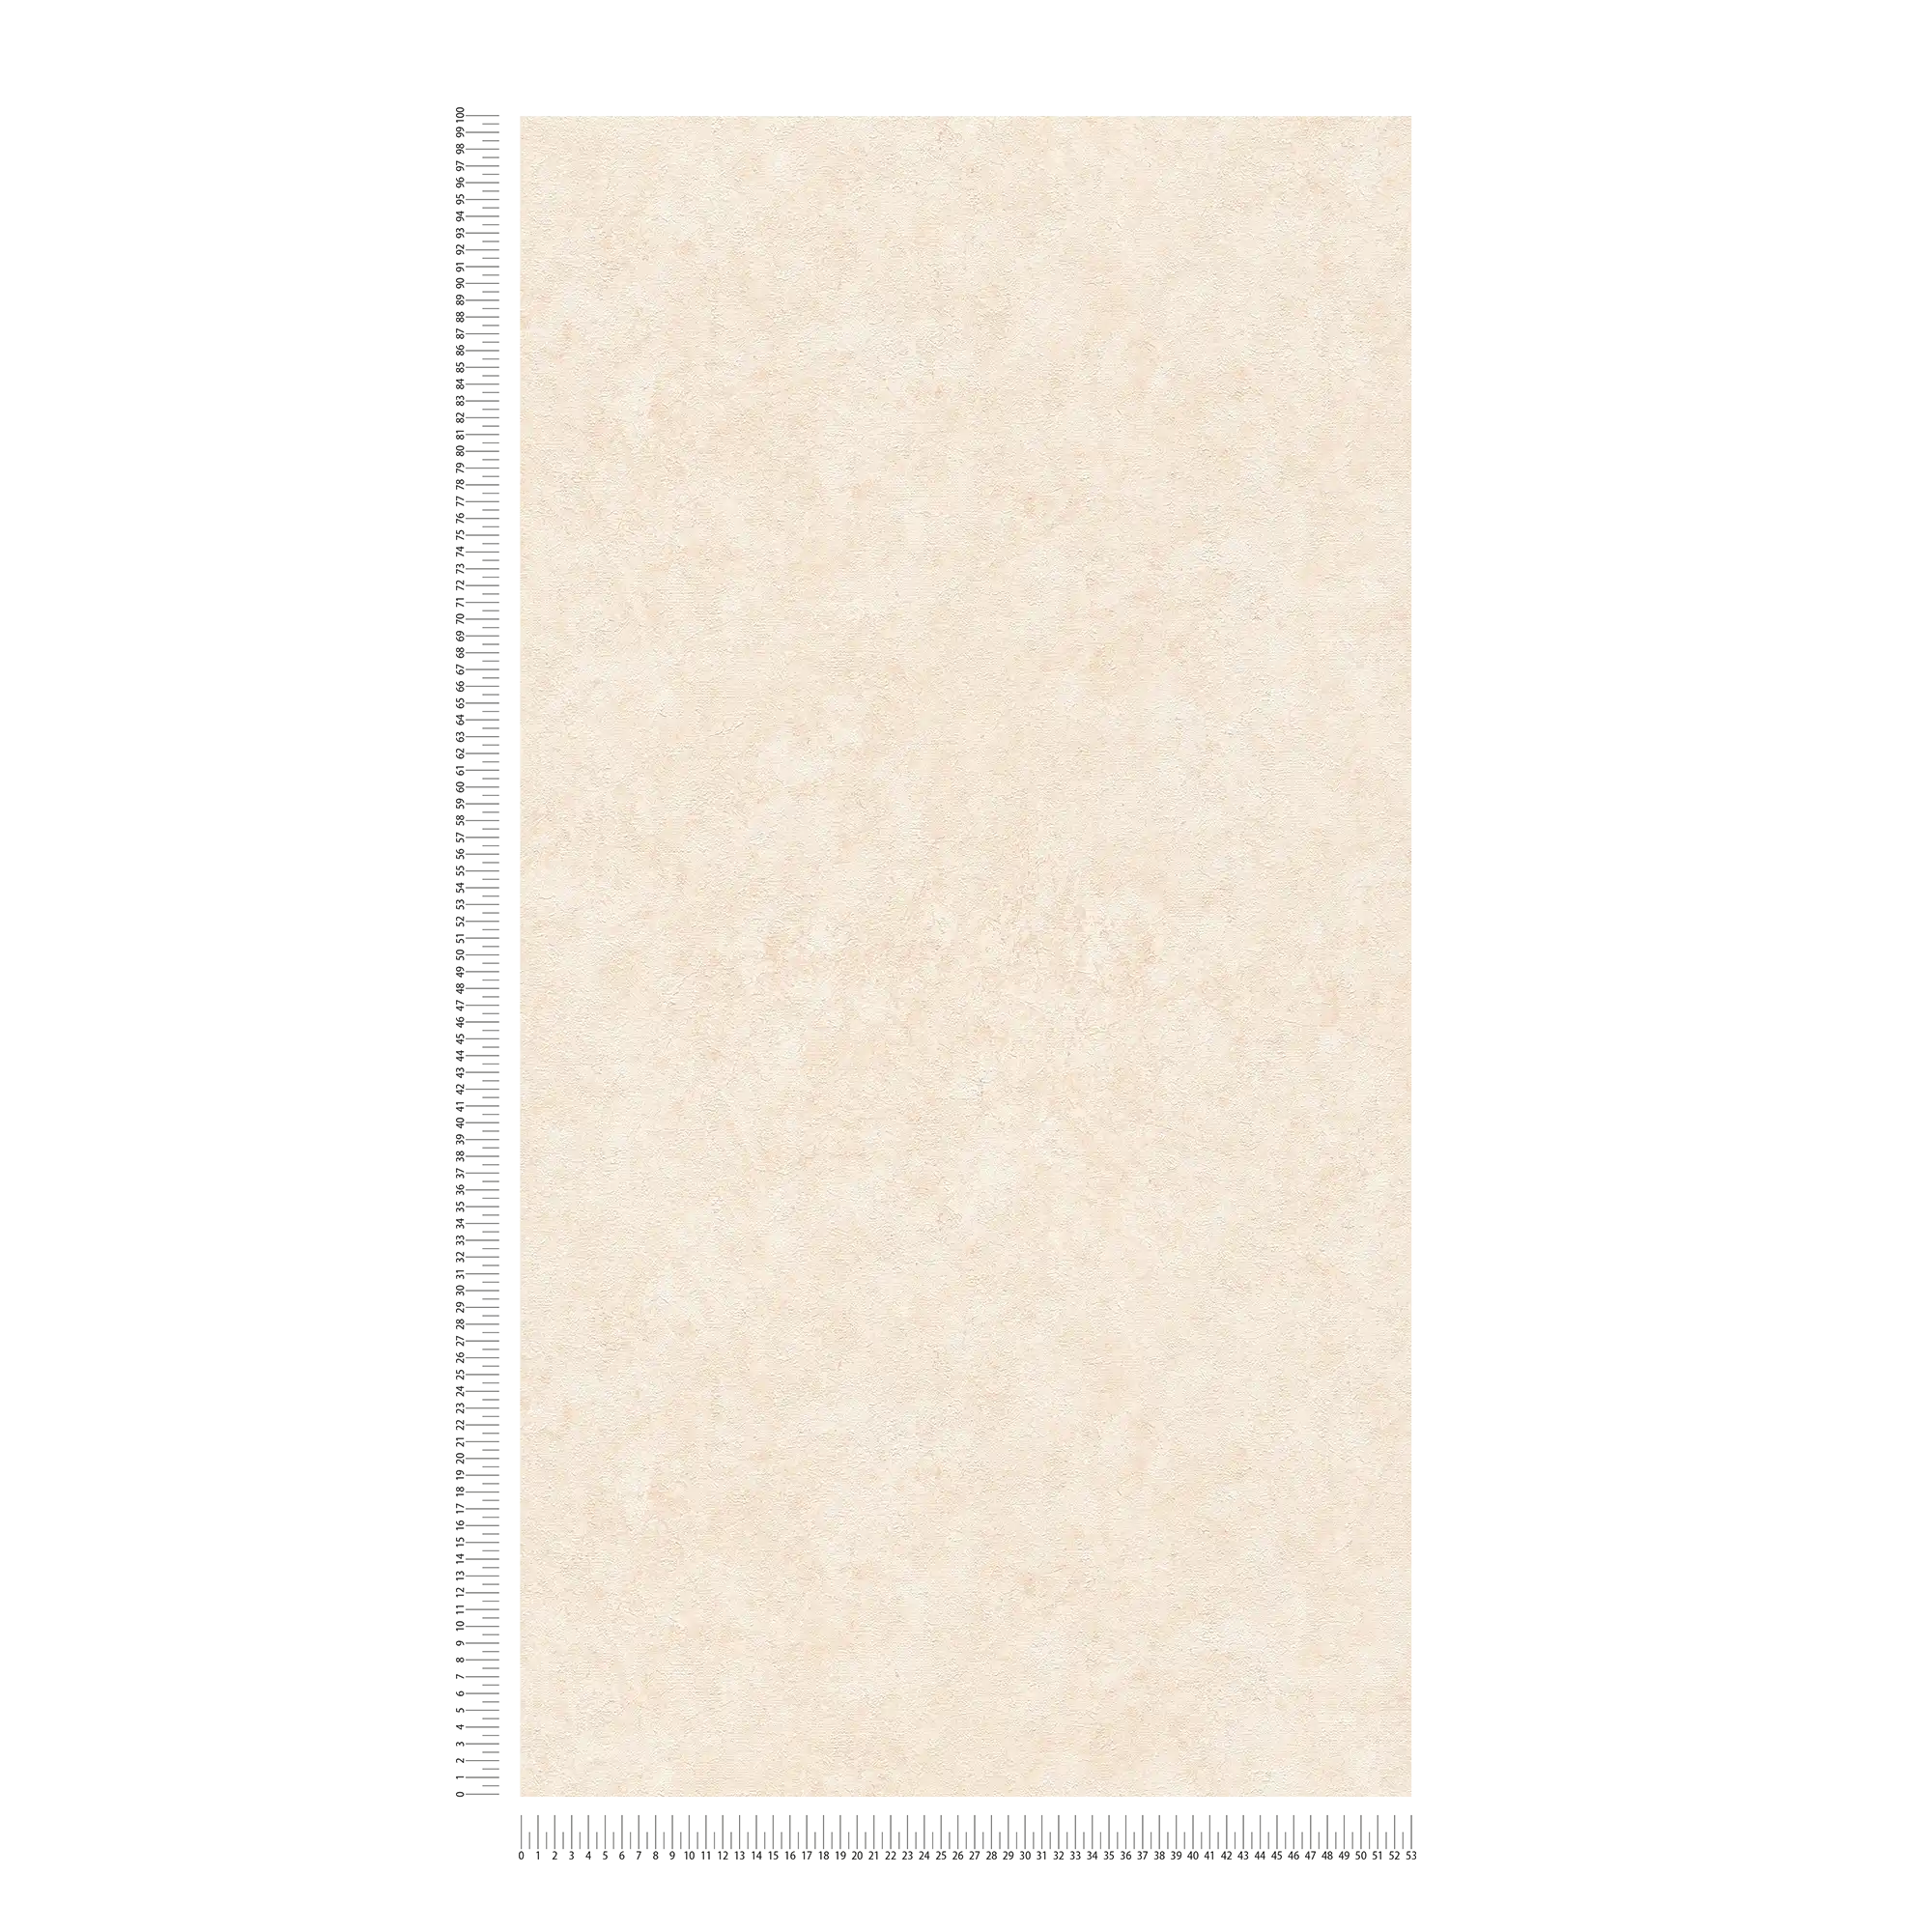             Papier peint structuré dans des tons unis subtils - crème, beige
        